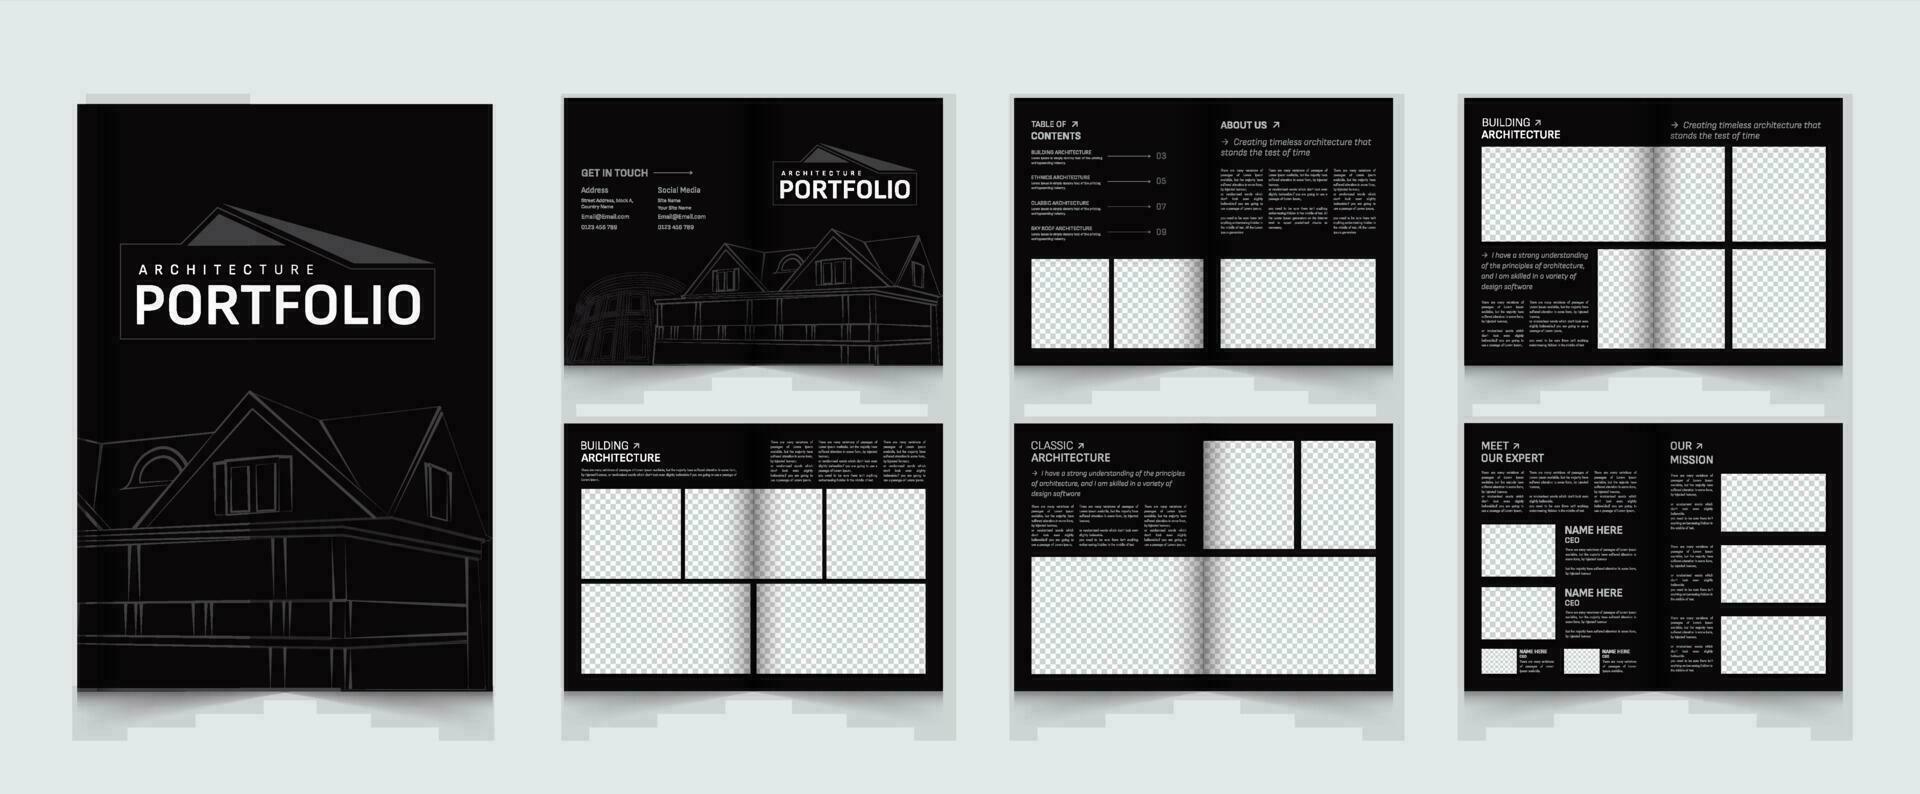 arkitektur och interiör portfölj eller portfölj mall design vektor